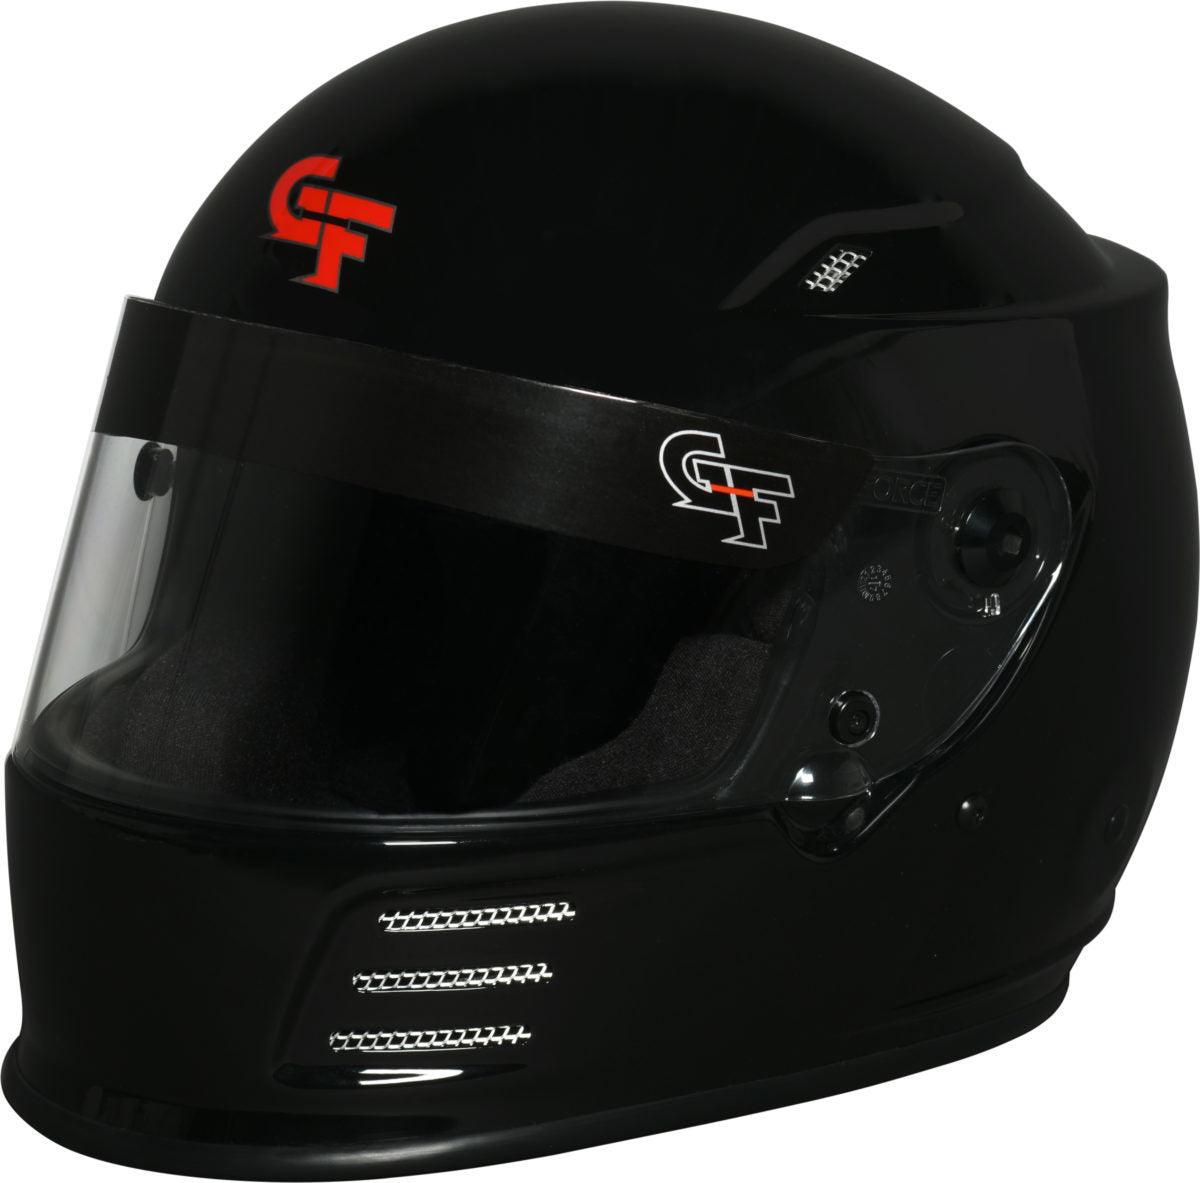 Helmet Revo Large Black SA2020 - Burlile Performance Products